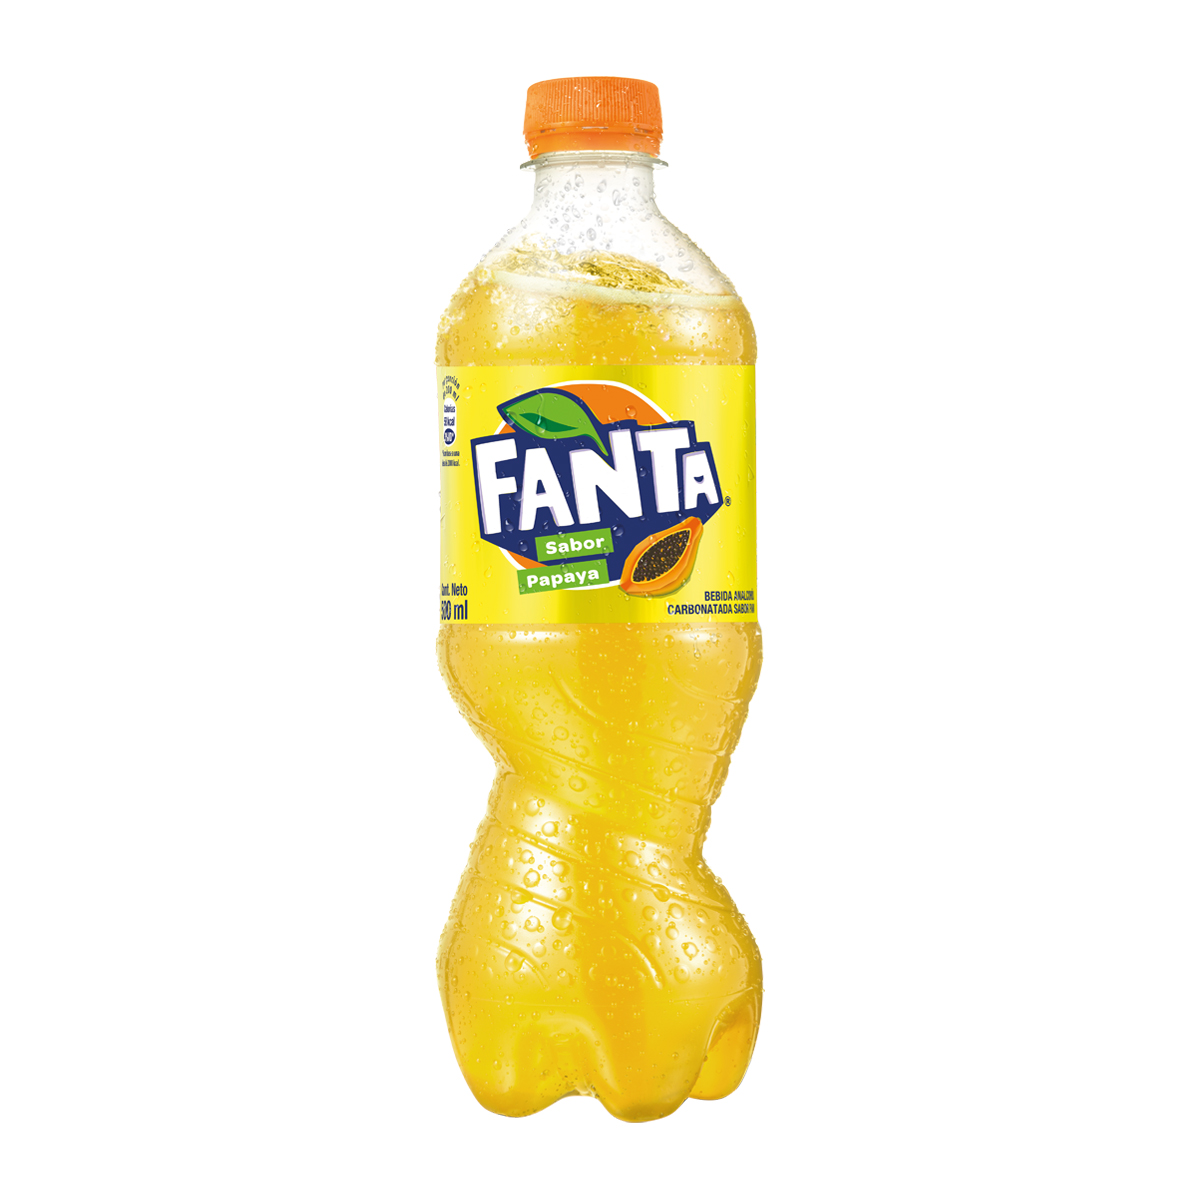 Botella de Fanta Papaya